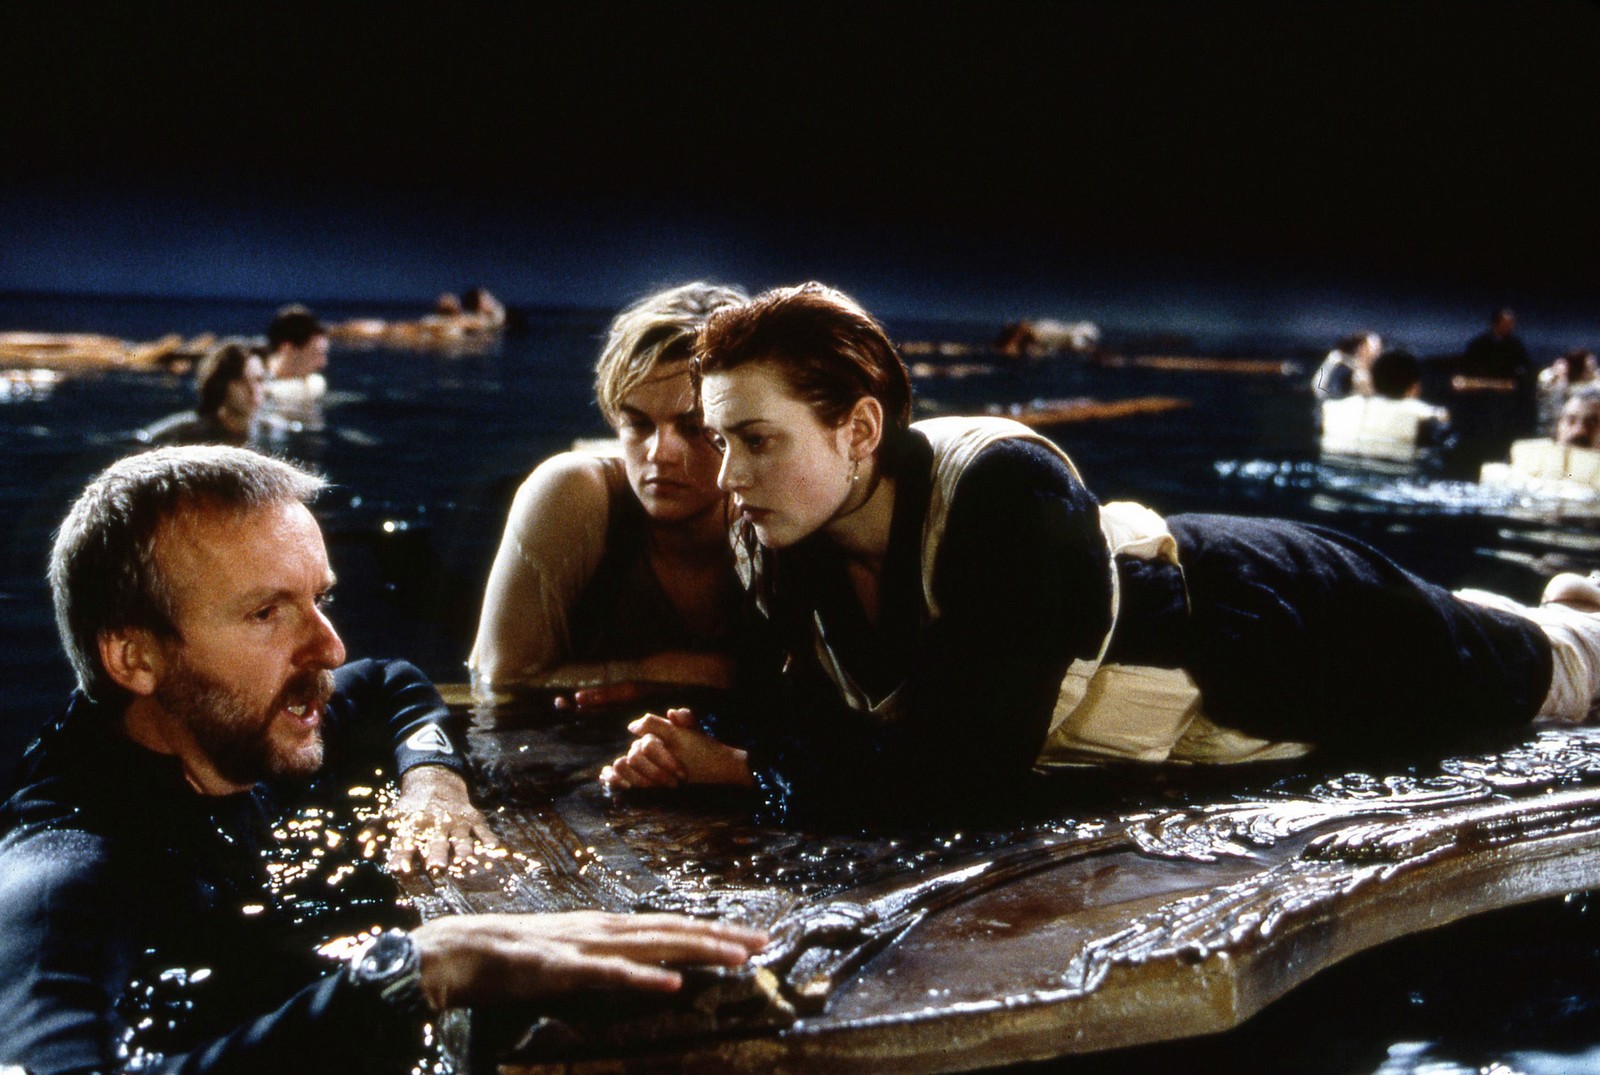 Η Κέιτ Γουίνσλετ και ο Λεονάρντο ντι Κάπριο στα γυρίσματα του "Τιτανικού"